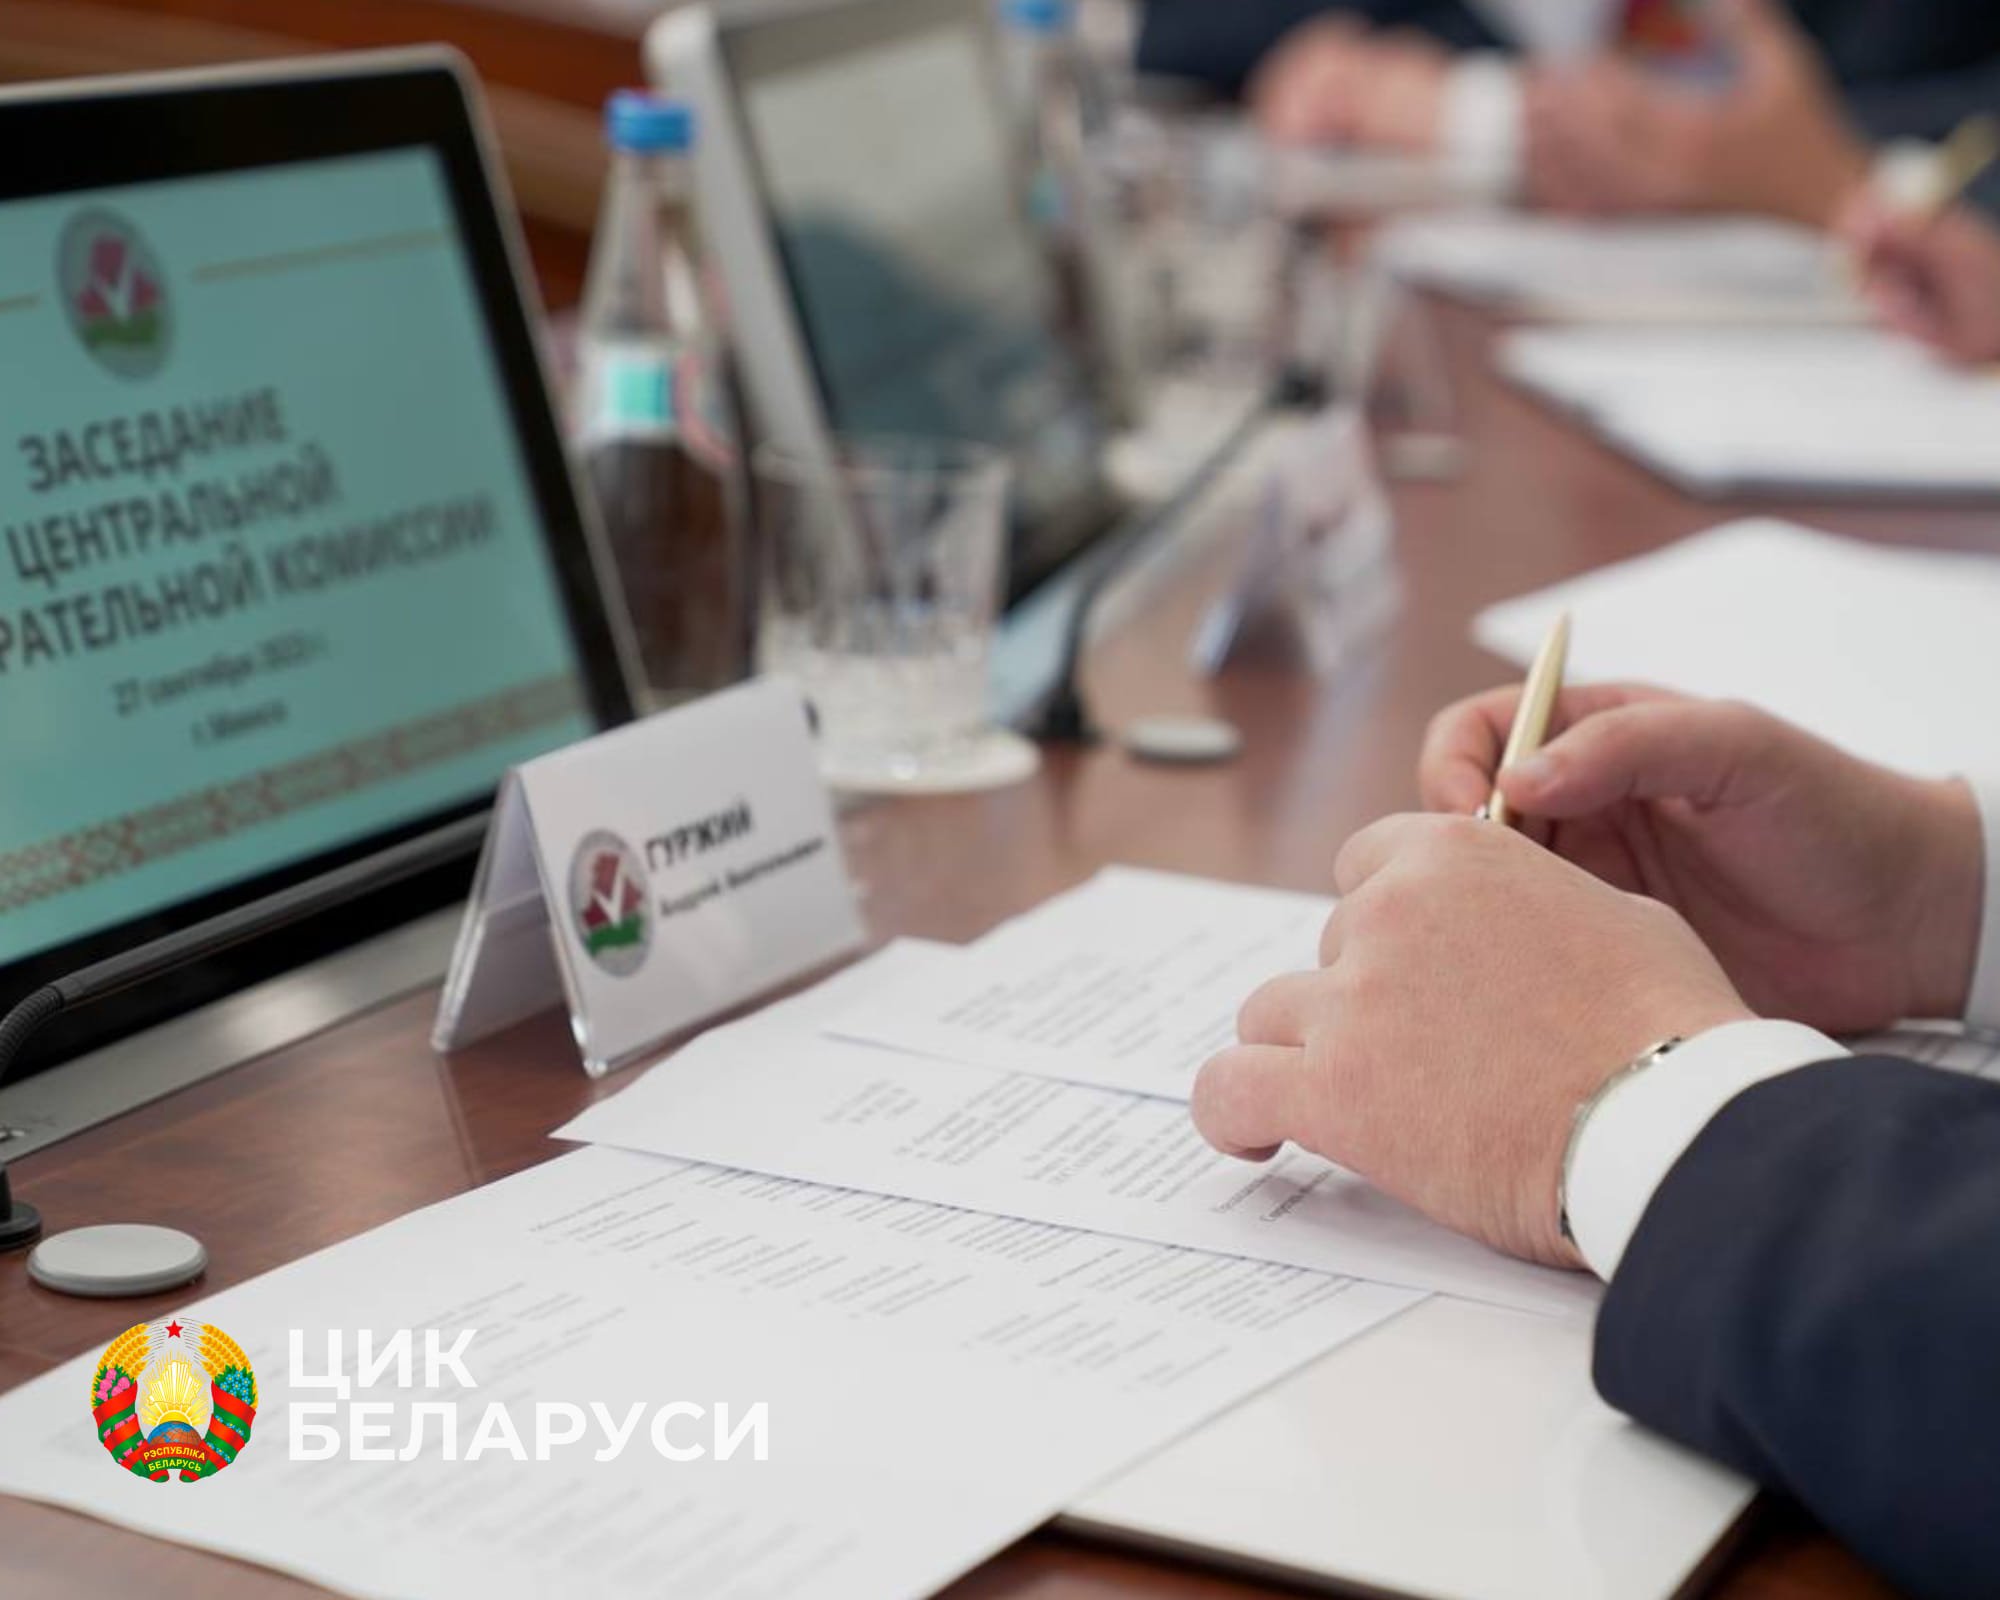 Пропагандистам Білорусі видали темники щодо висвітлення виборів